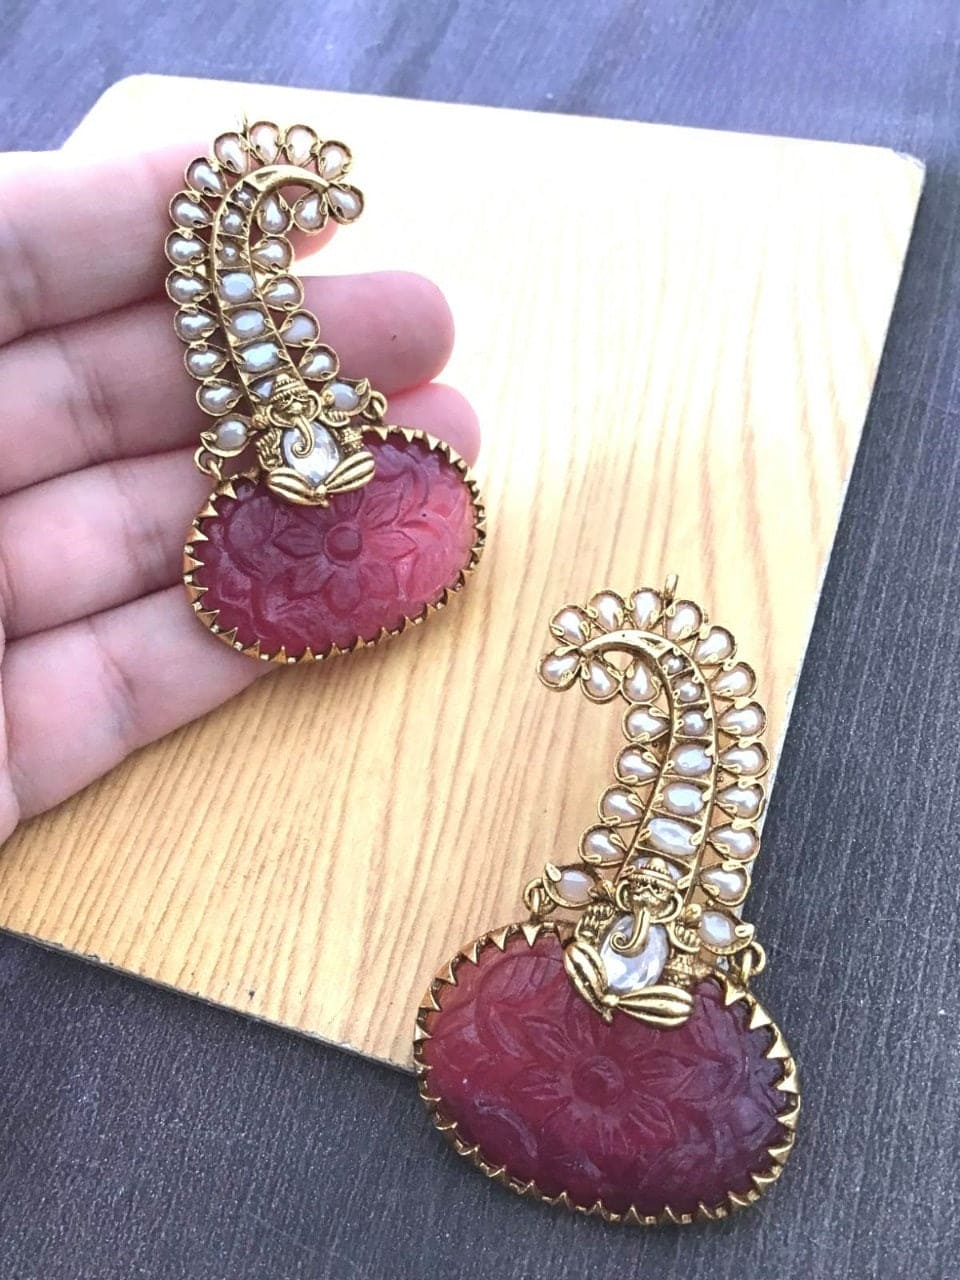 Sadhna earrings